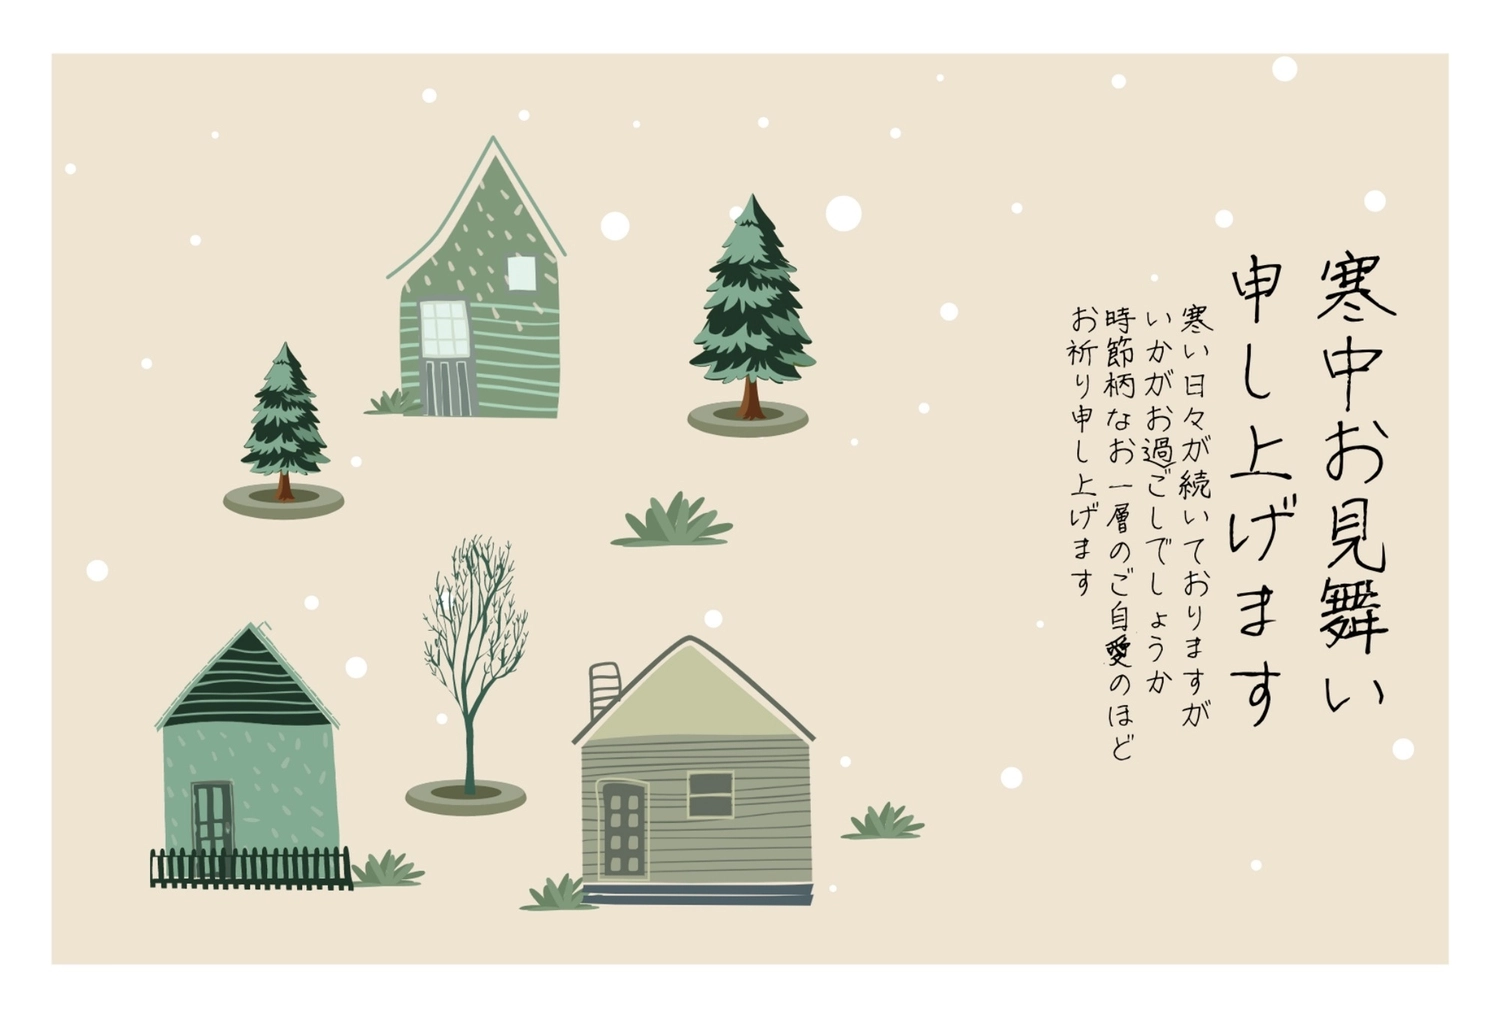 ナチュラルな寒中見舞い, monotone, create, design, Mid-winter Greeting template